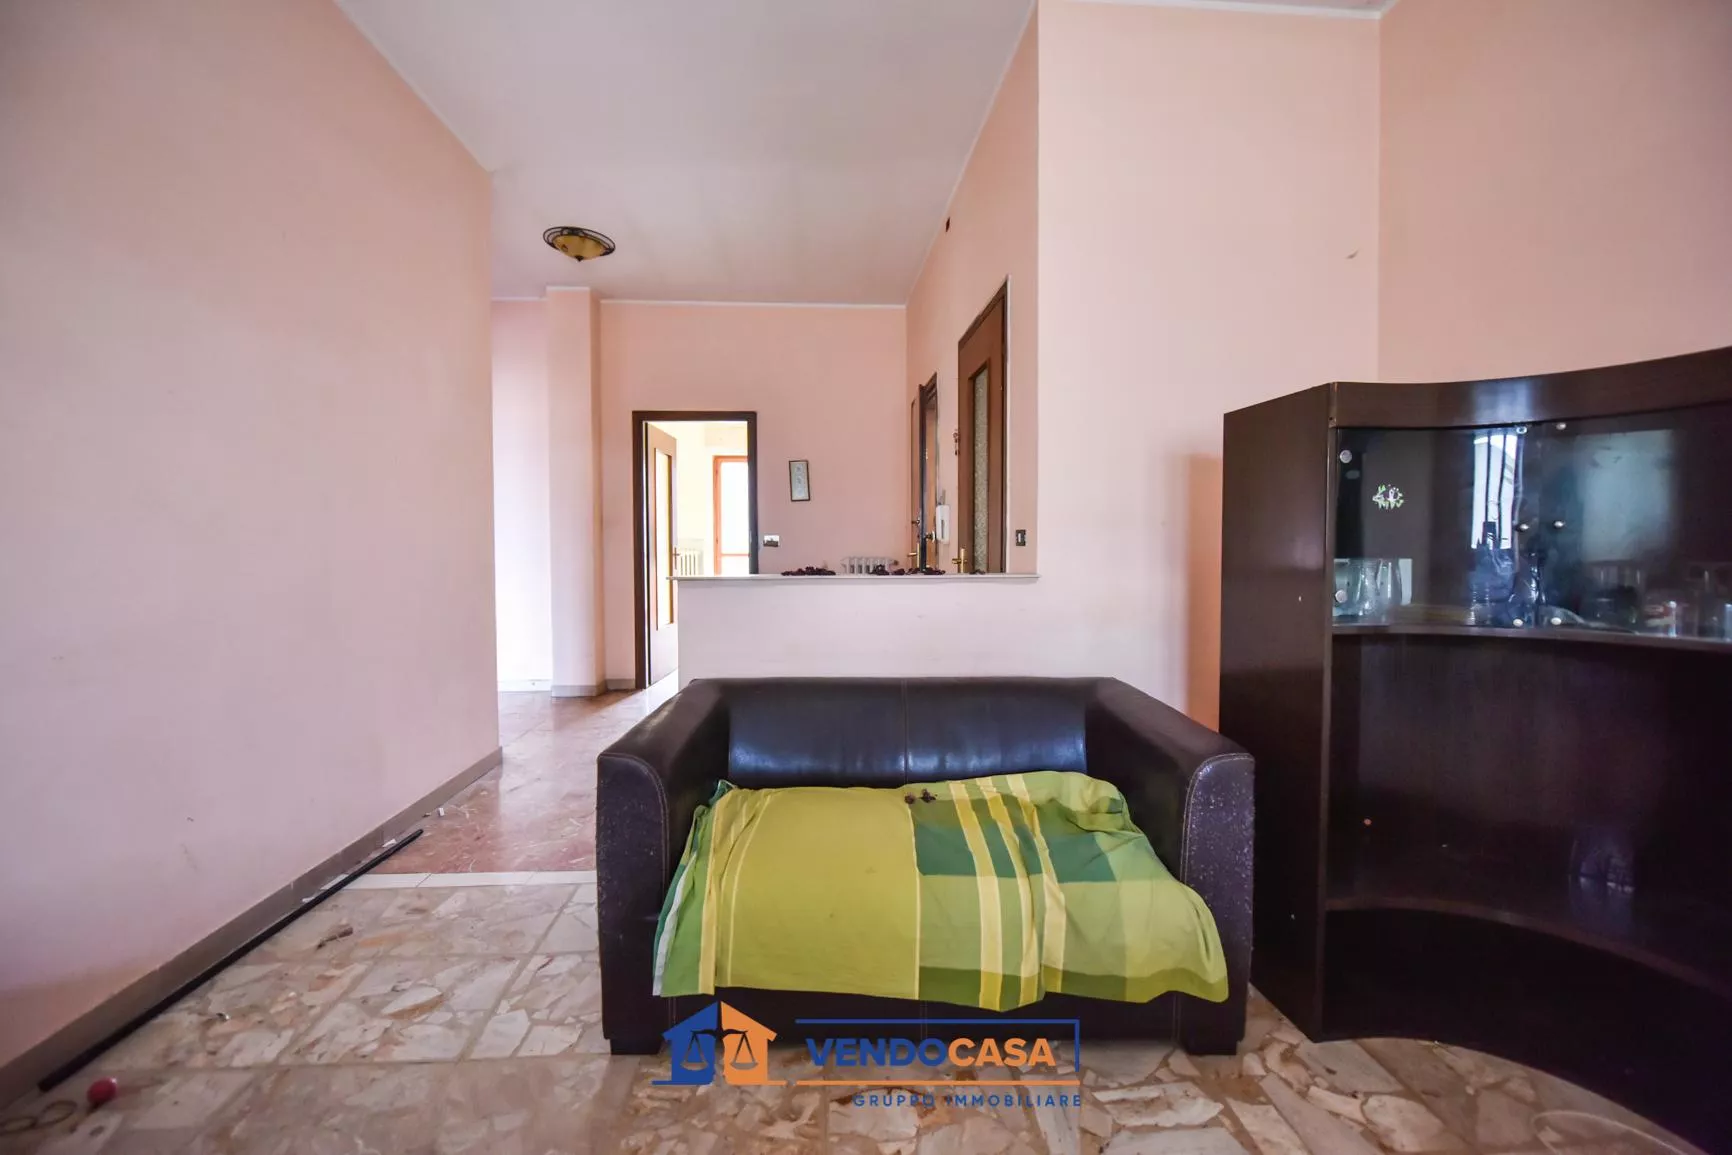 Immagine per Appartamento in vendita a Lanzo Torinese via Regione Momello 1